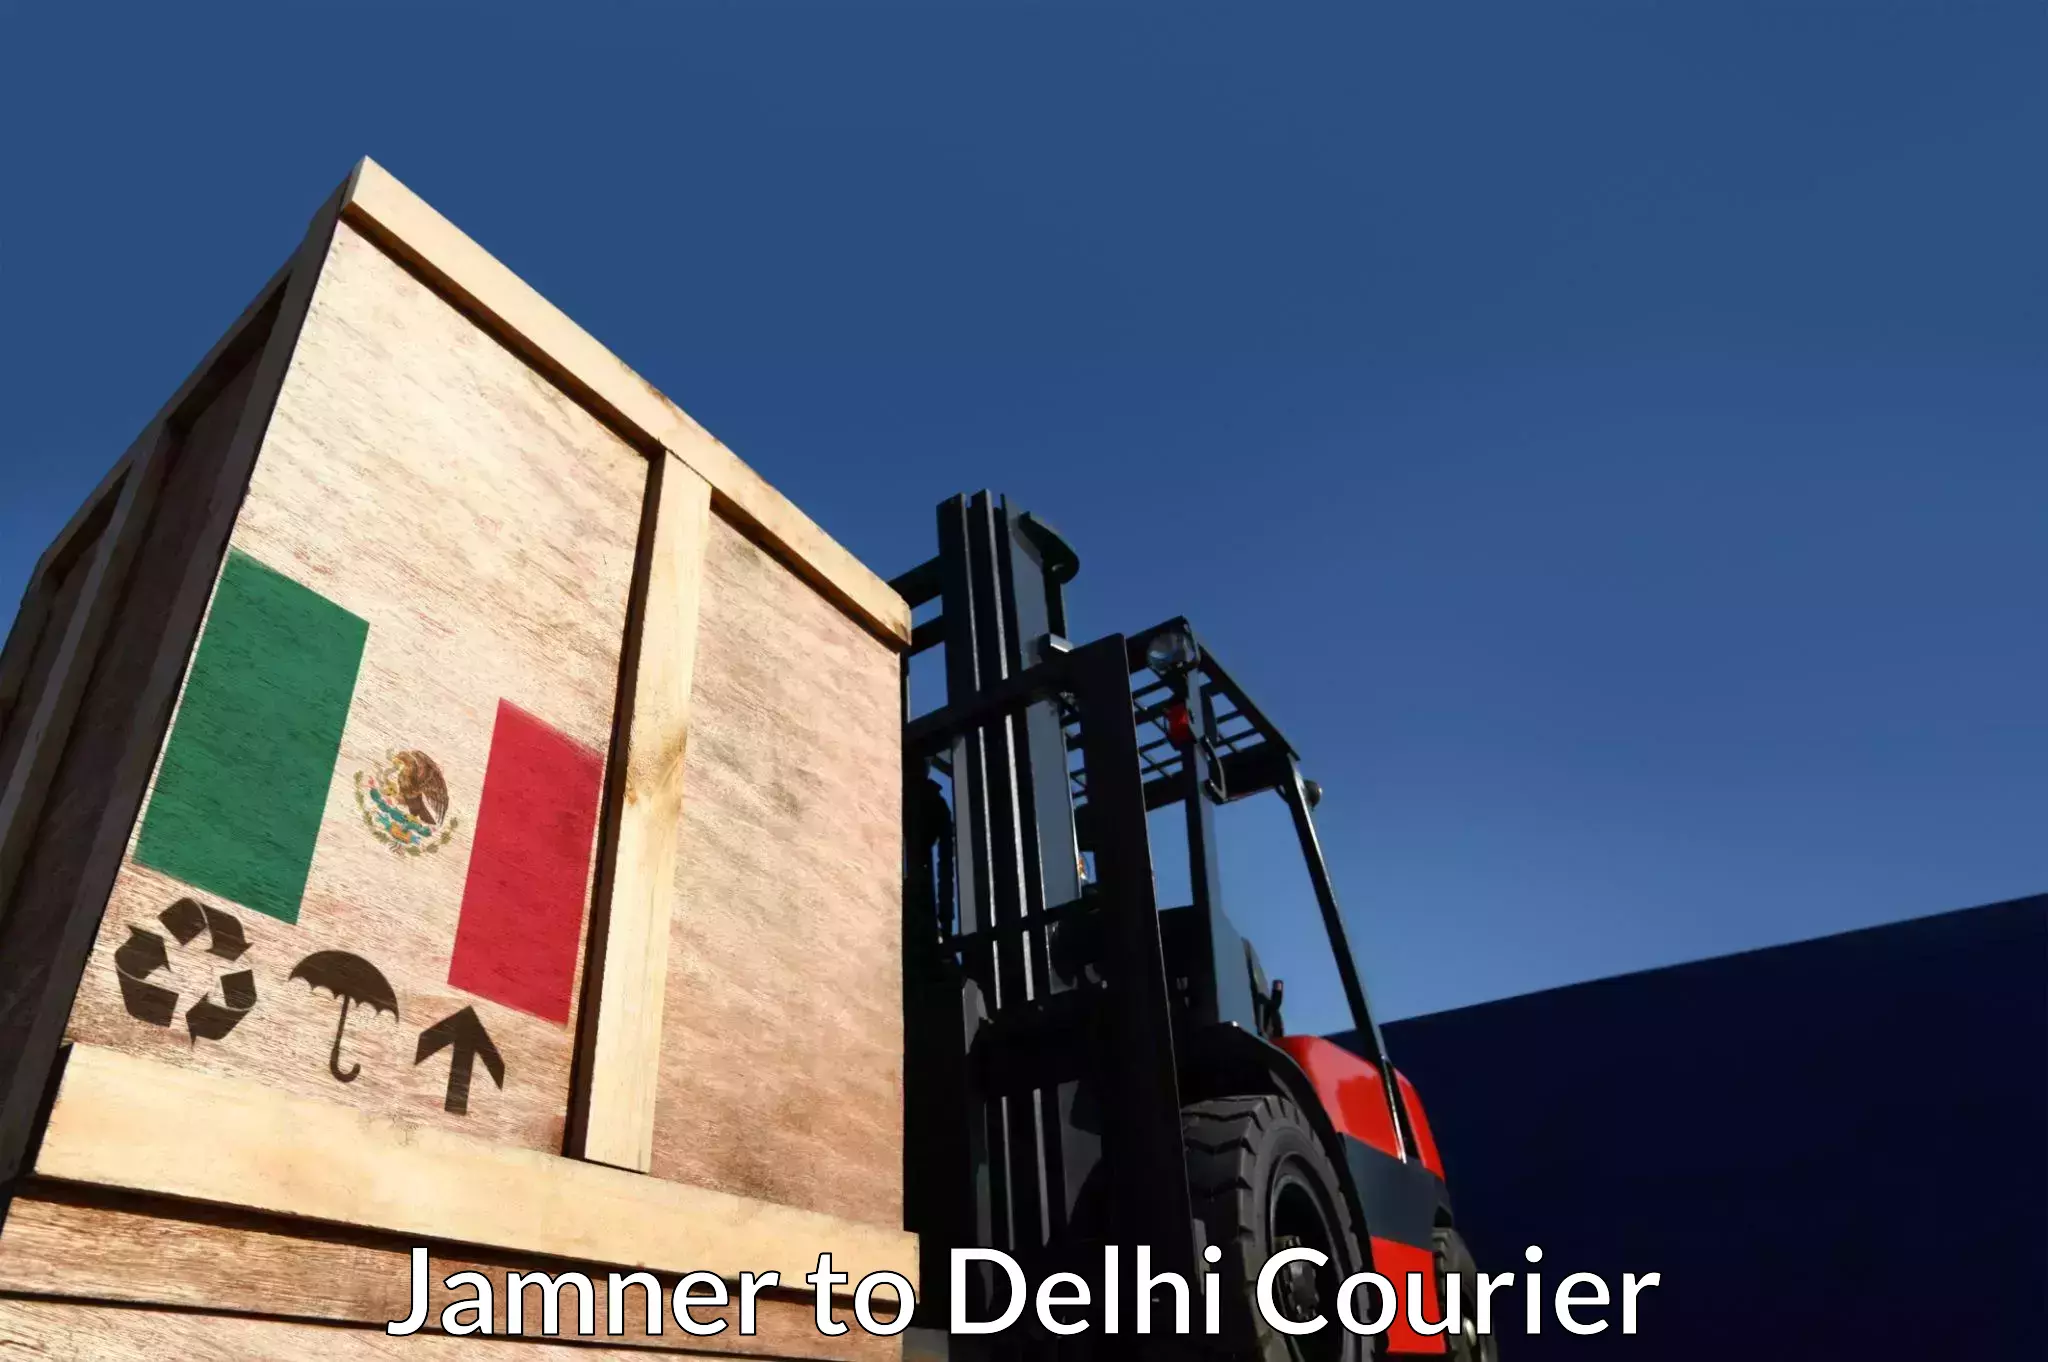 Next-day freight services Jamner to Delhi